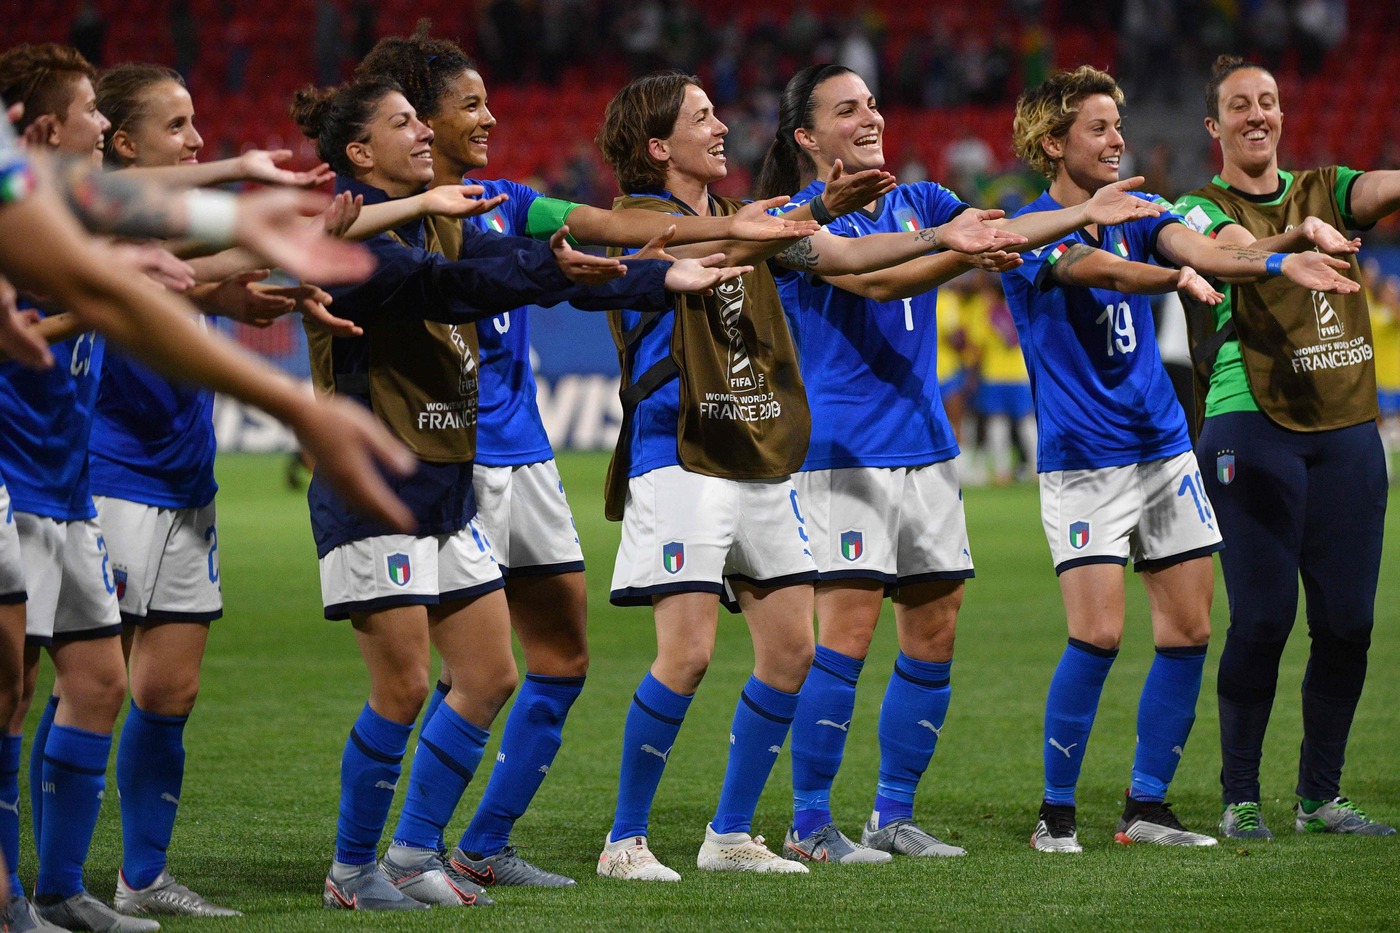 Mondiale donne, Italia-Cina martedì 25 giugno: analisi e pronostico degli ottavi di finale del torneo iridato femminile